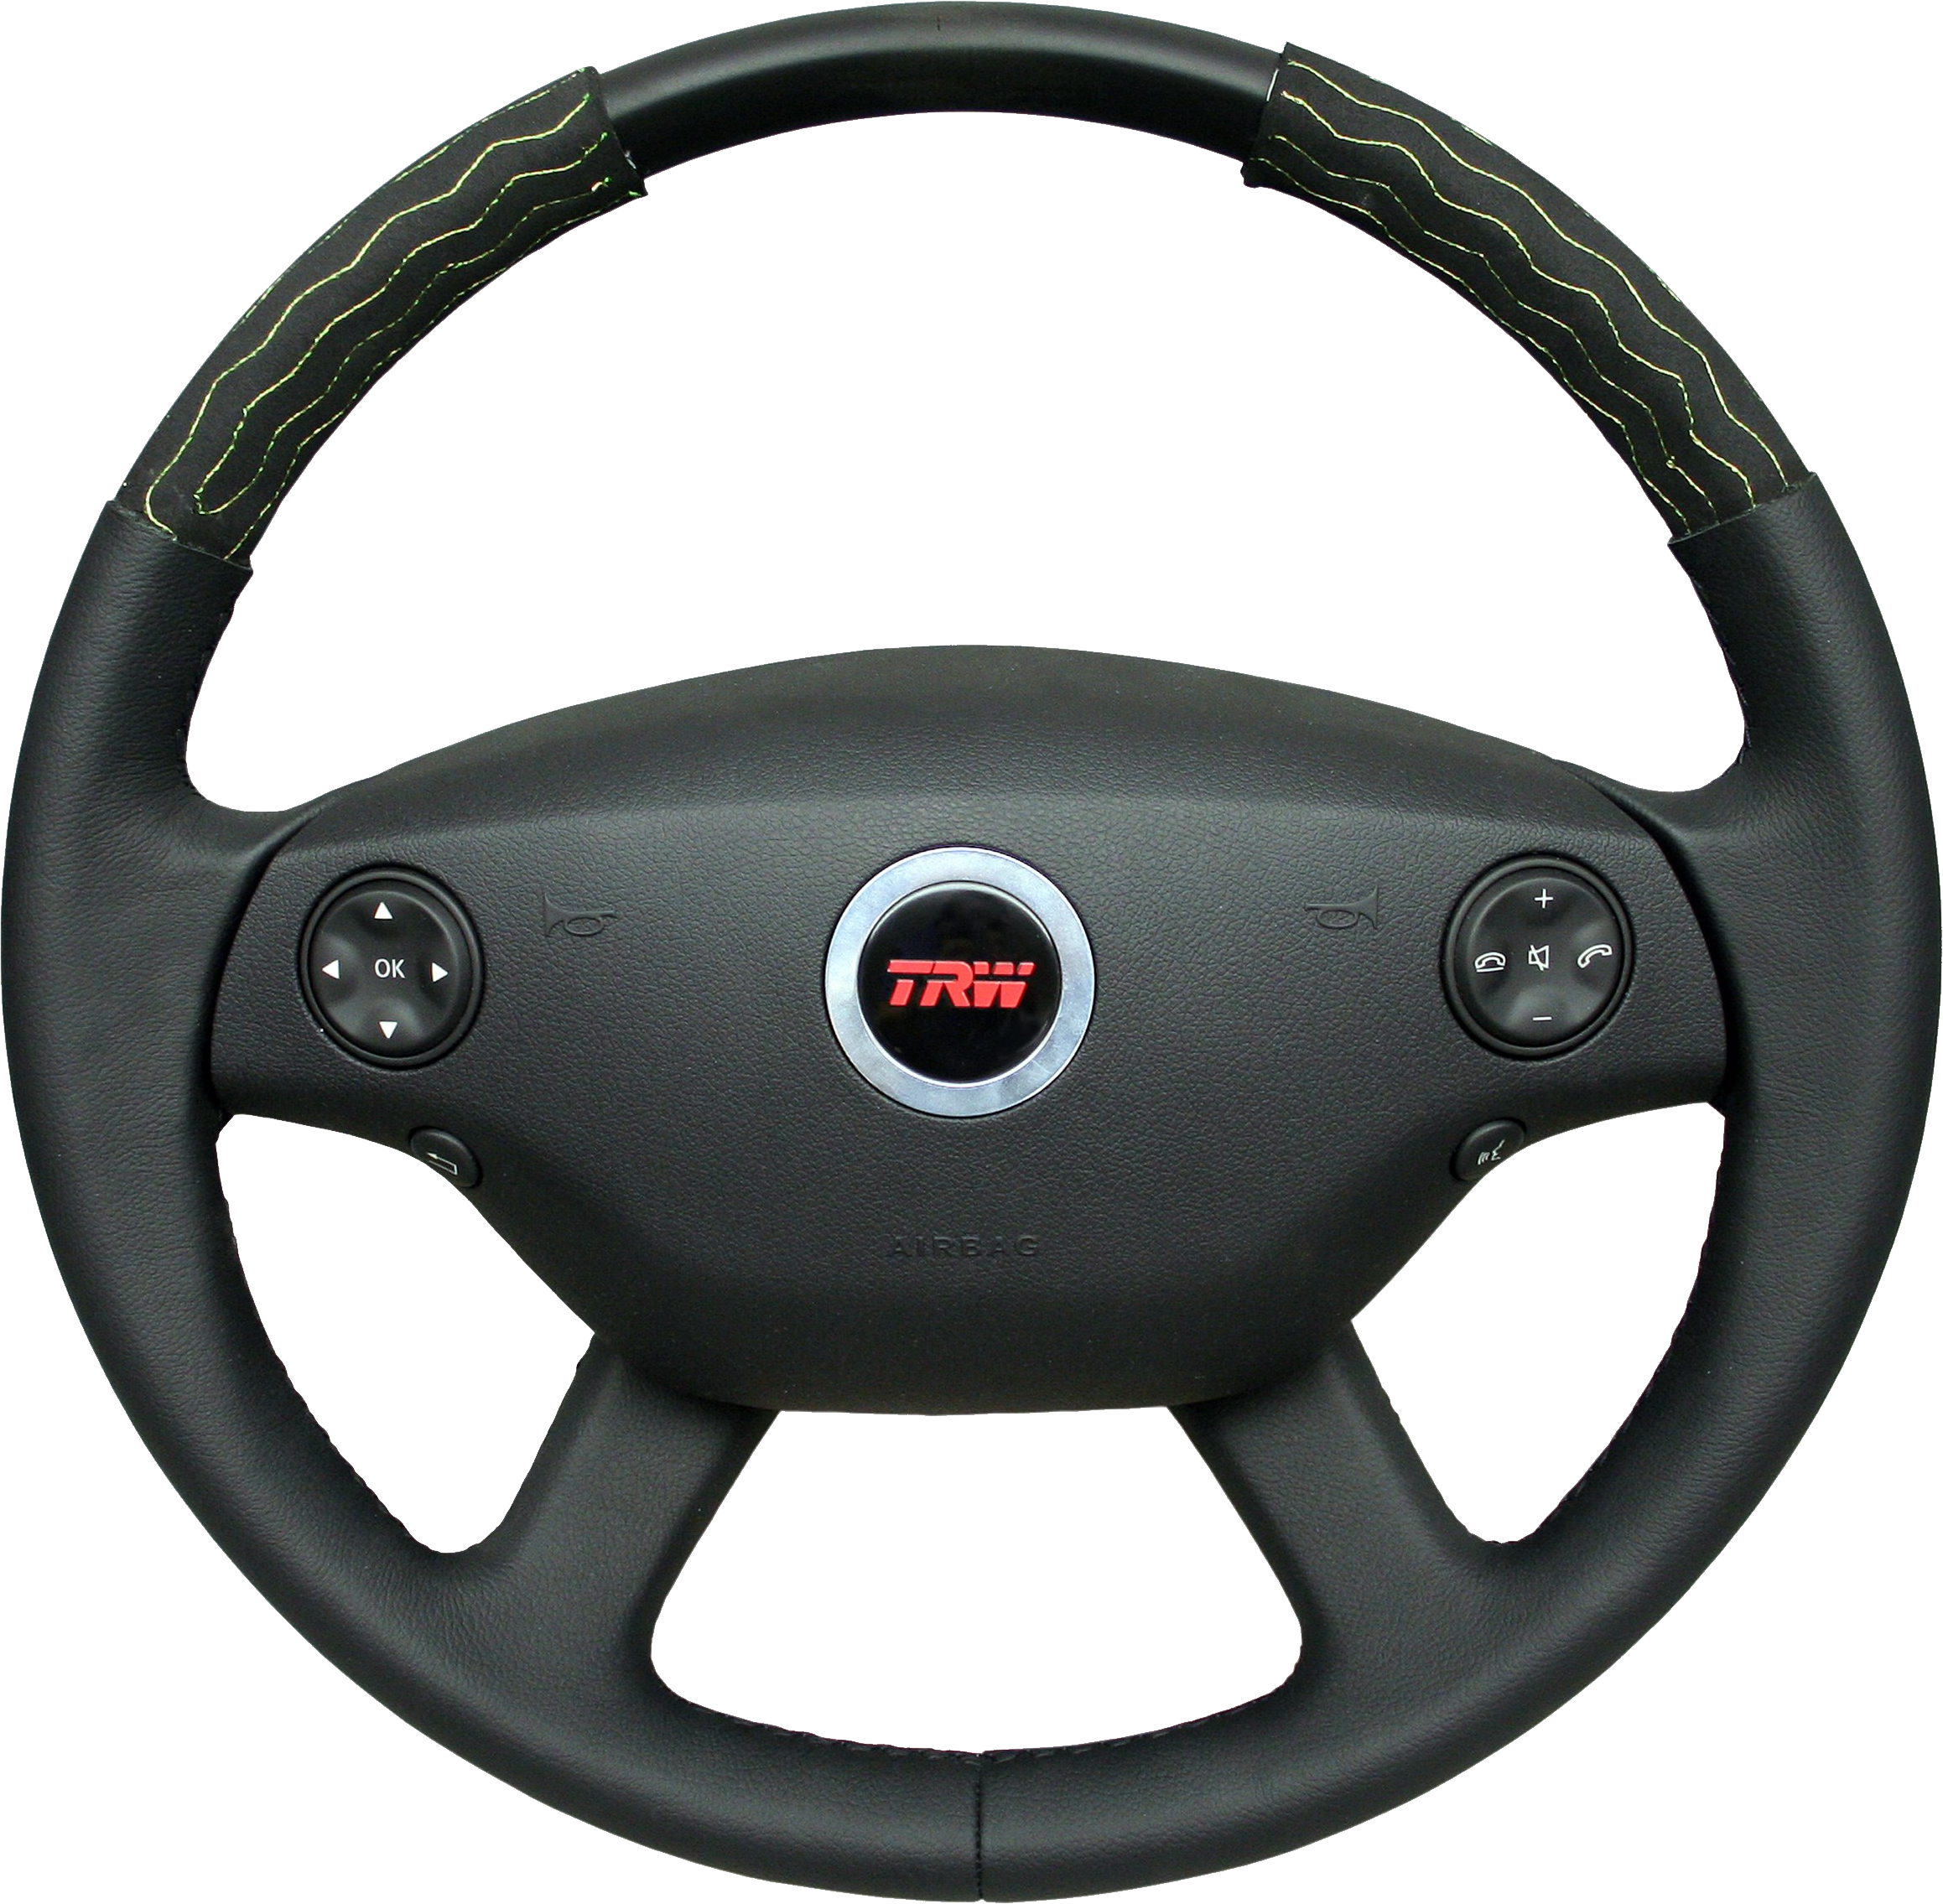 Steering Wheel Png Image - Steering Wheel Png Image (2317x2271)